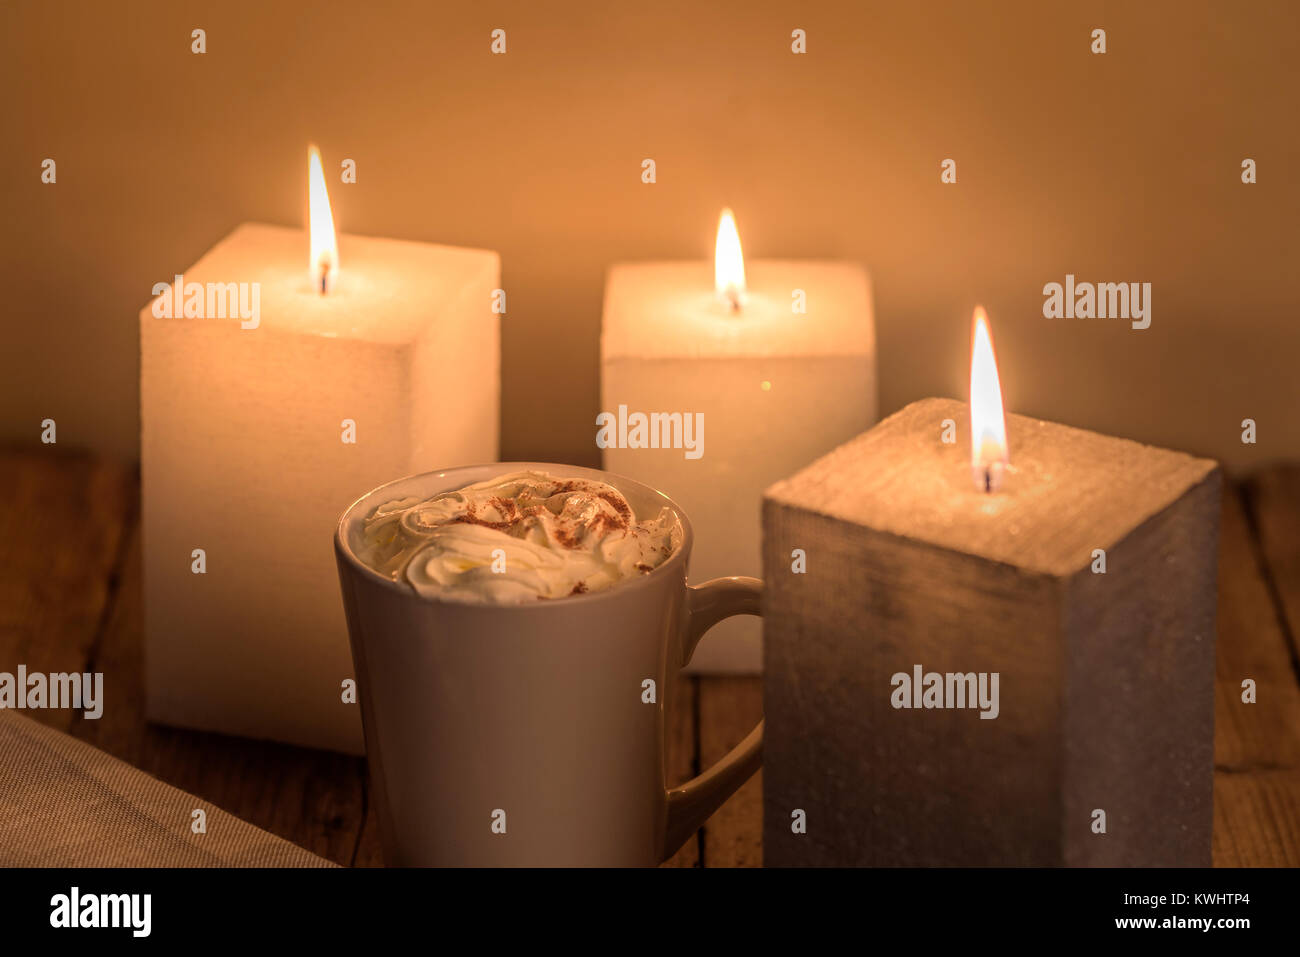 Calda e intima tavola a lume di candela con una tazza di crema di cioccolata calda. Foto Stock